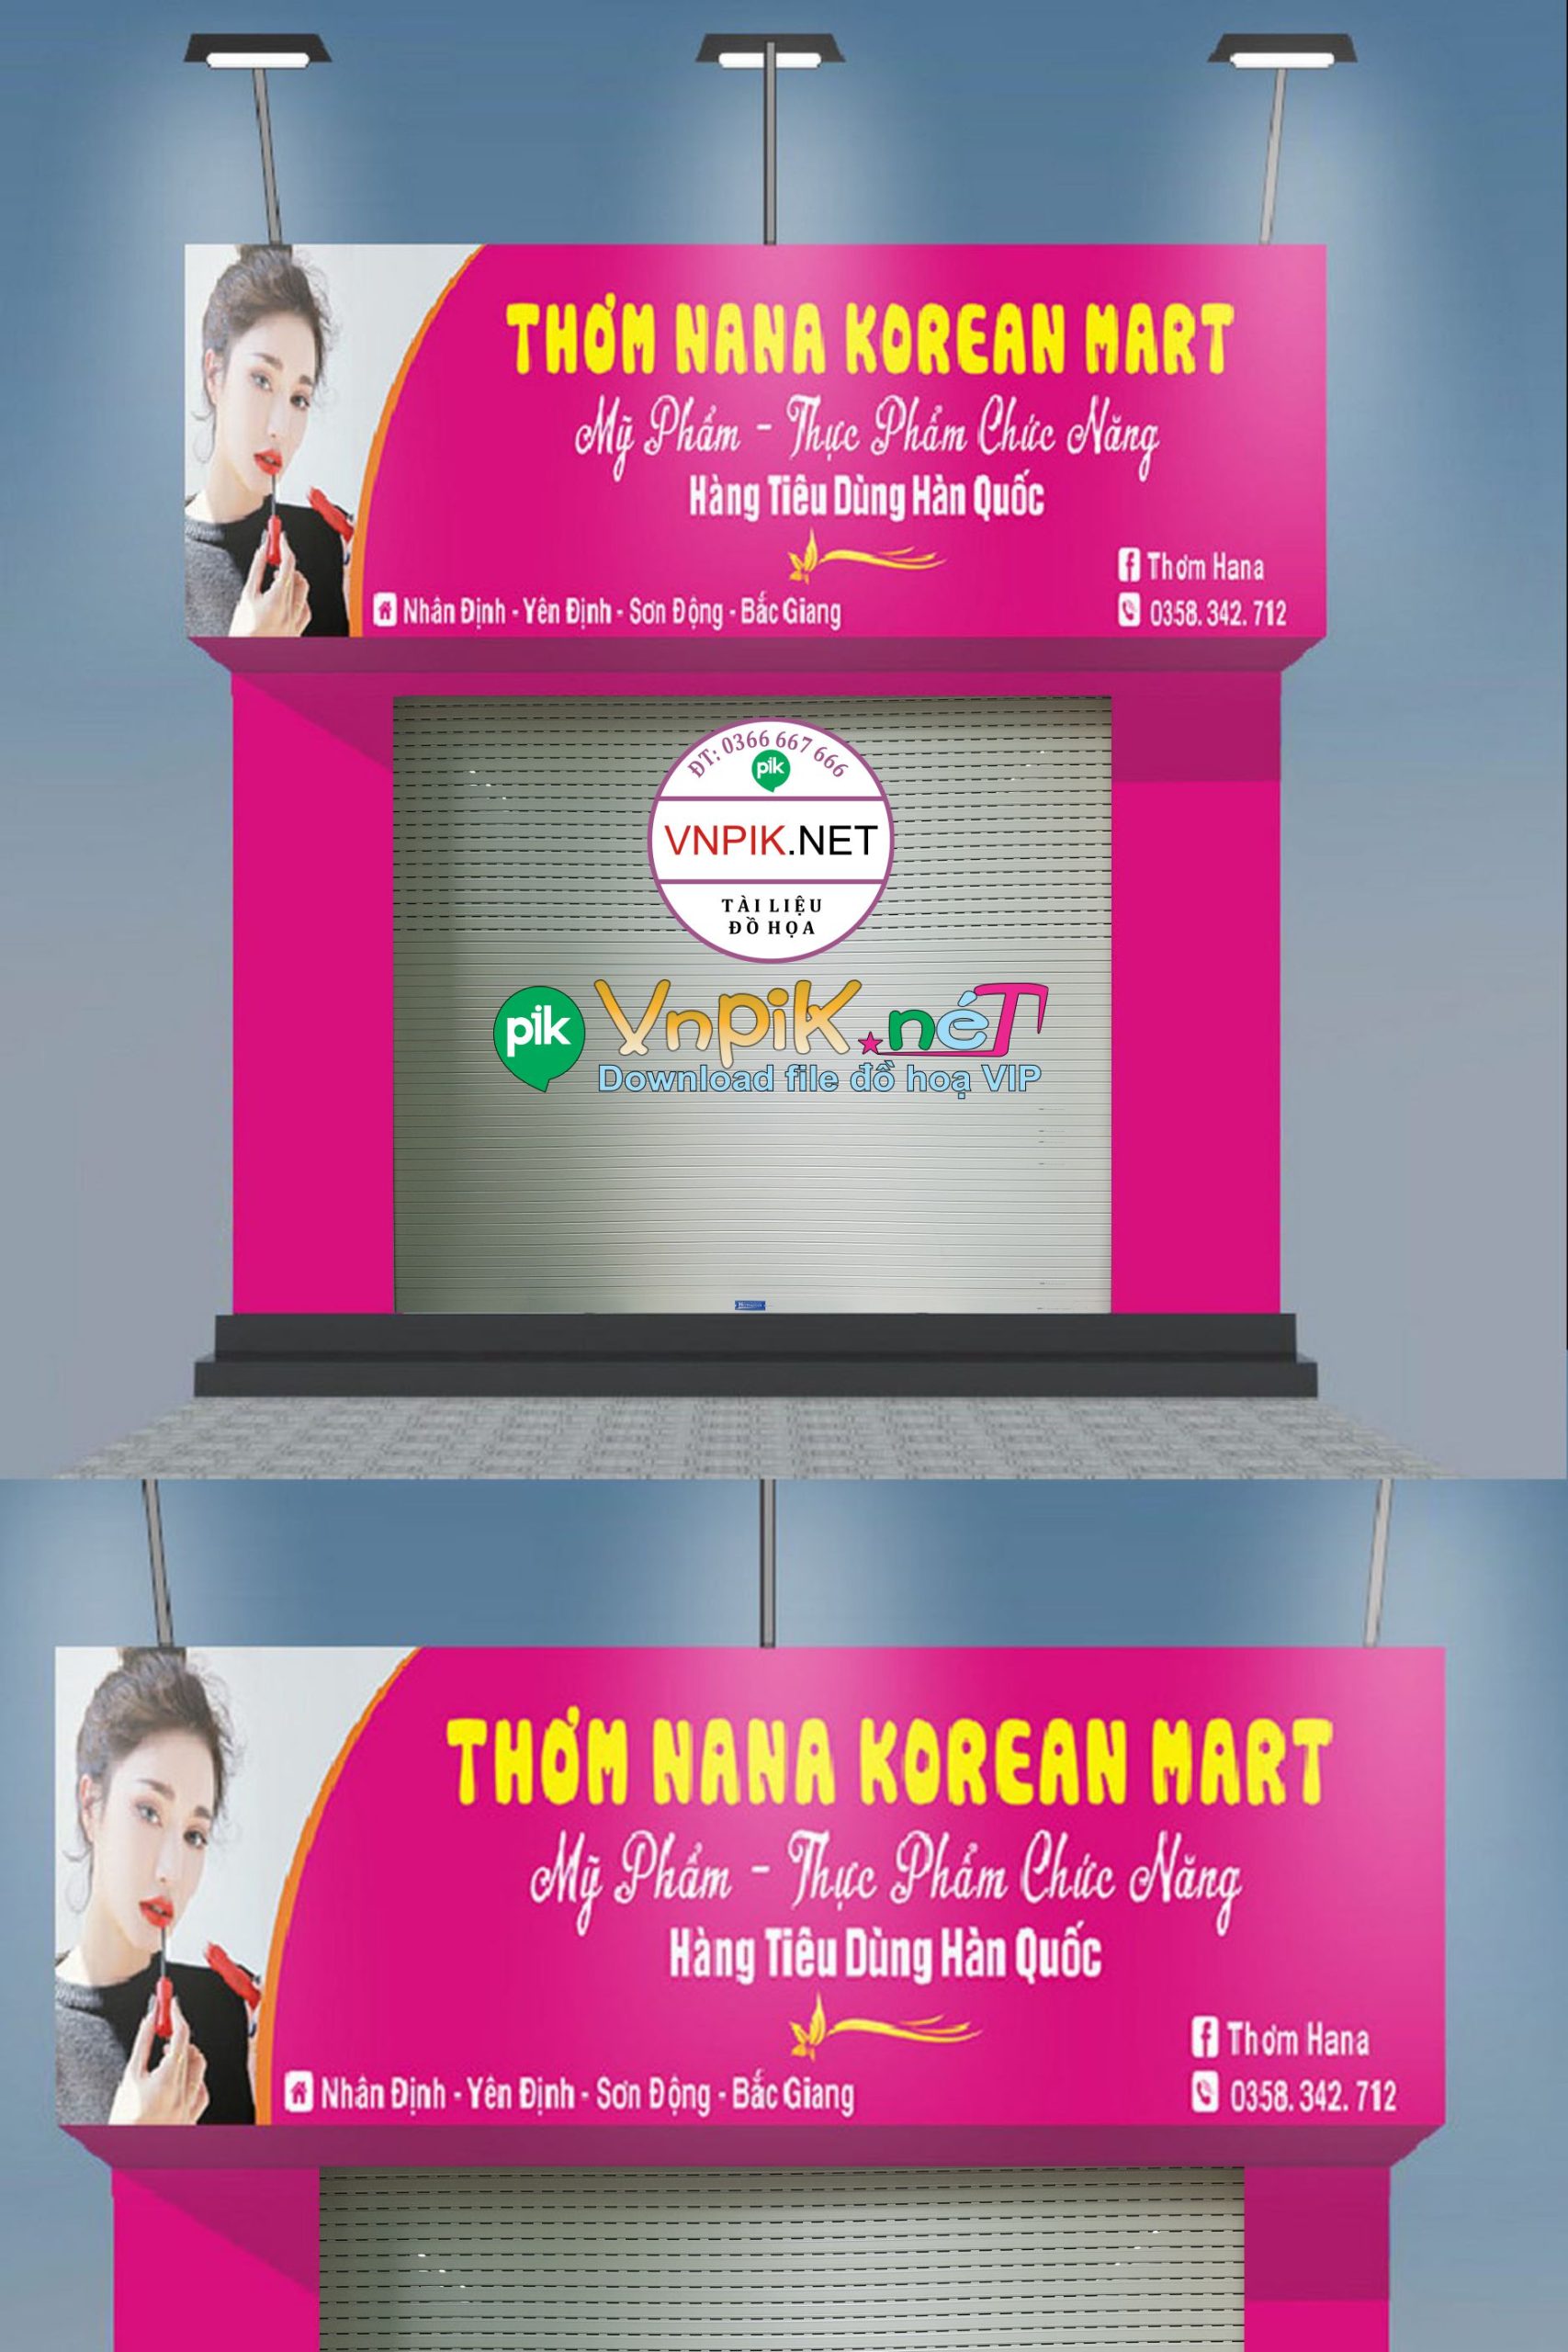 Market bảng quảng cáo Mỹ phẩm Thơm Hana Korean Mart file Corel